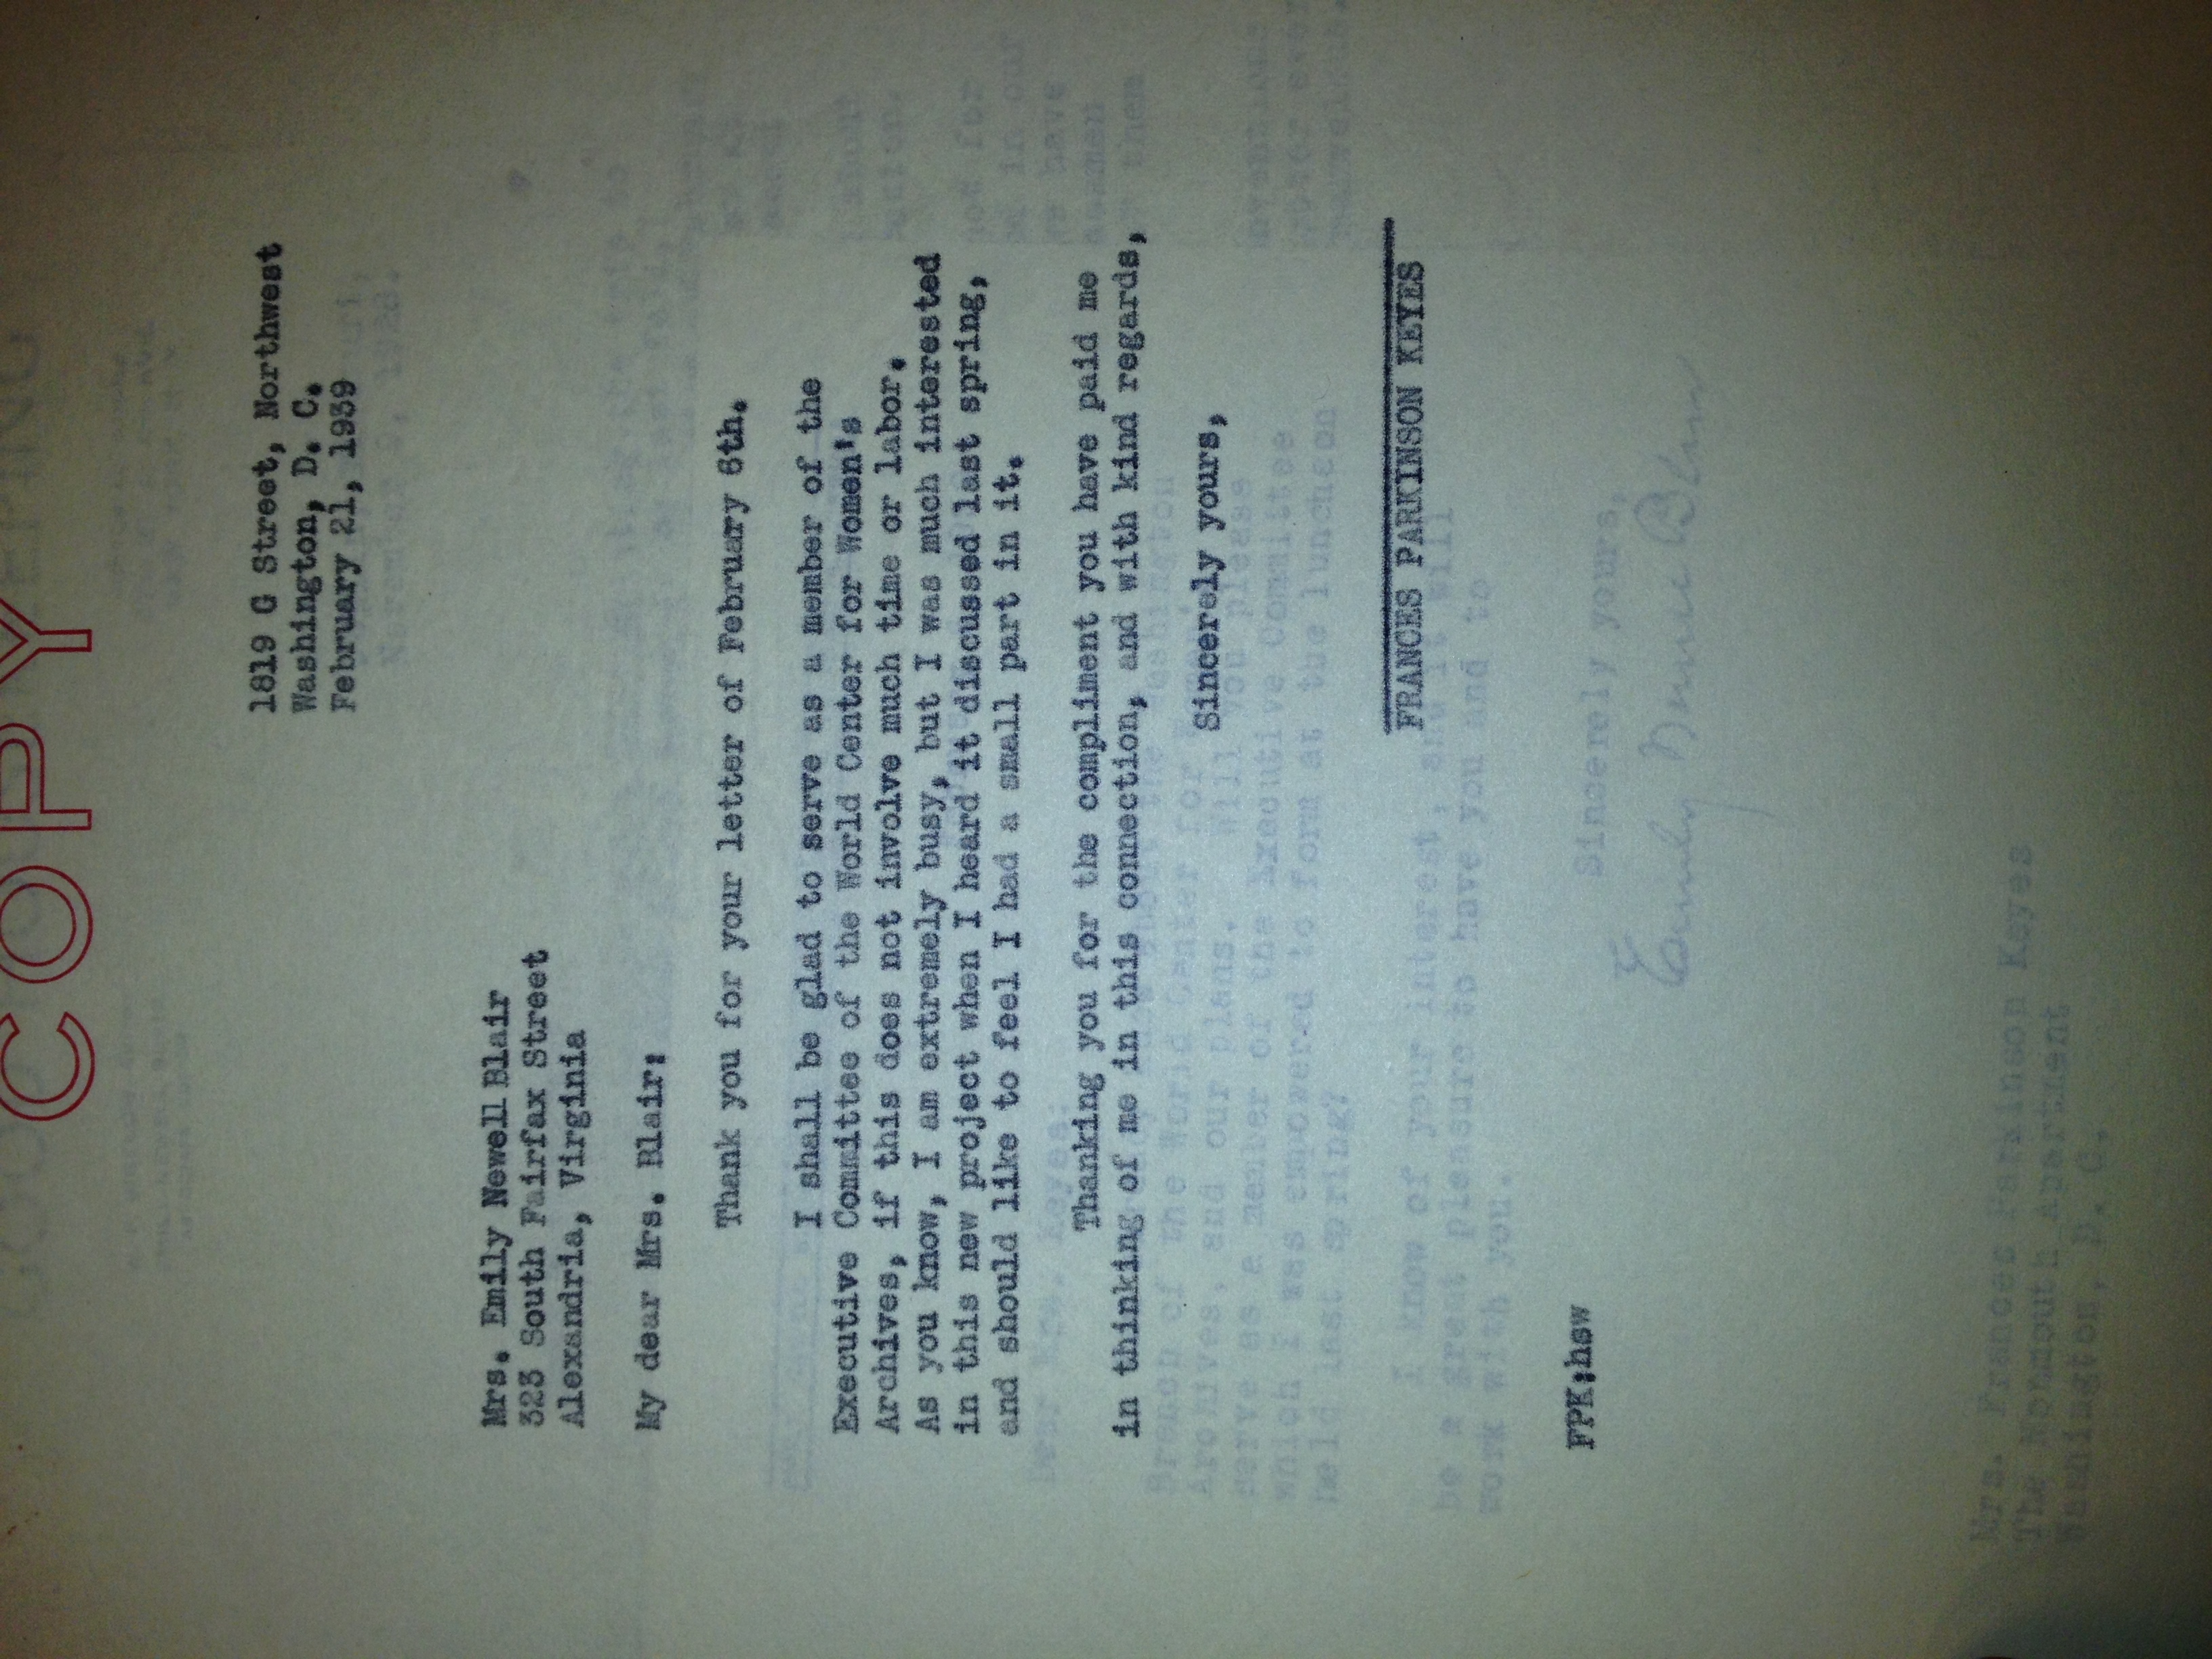 FPK to Mrs. Emily Newell Blari, February 21, 1939